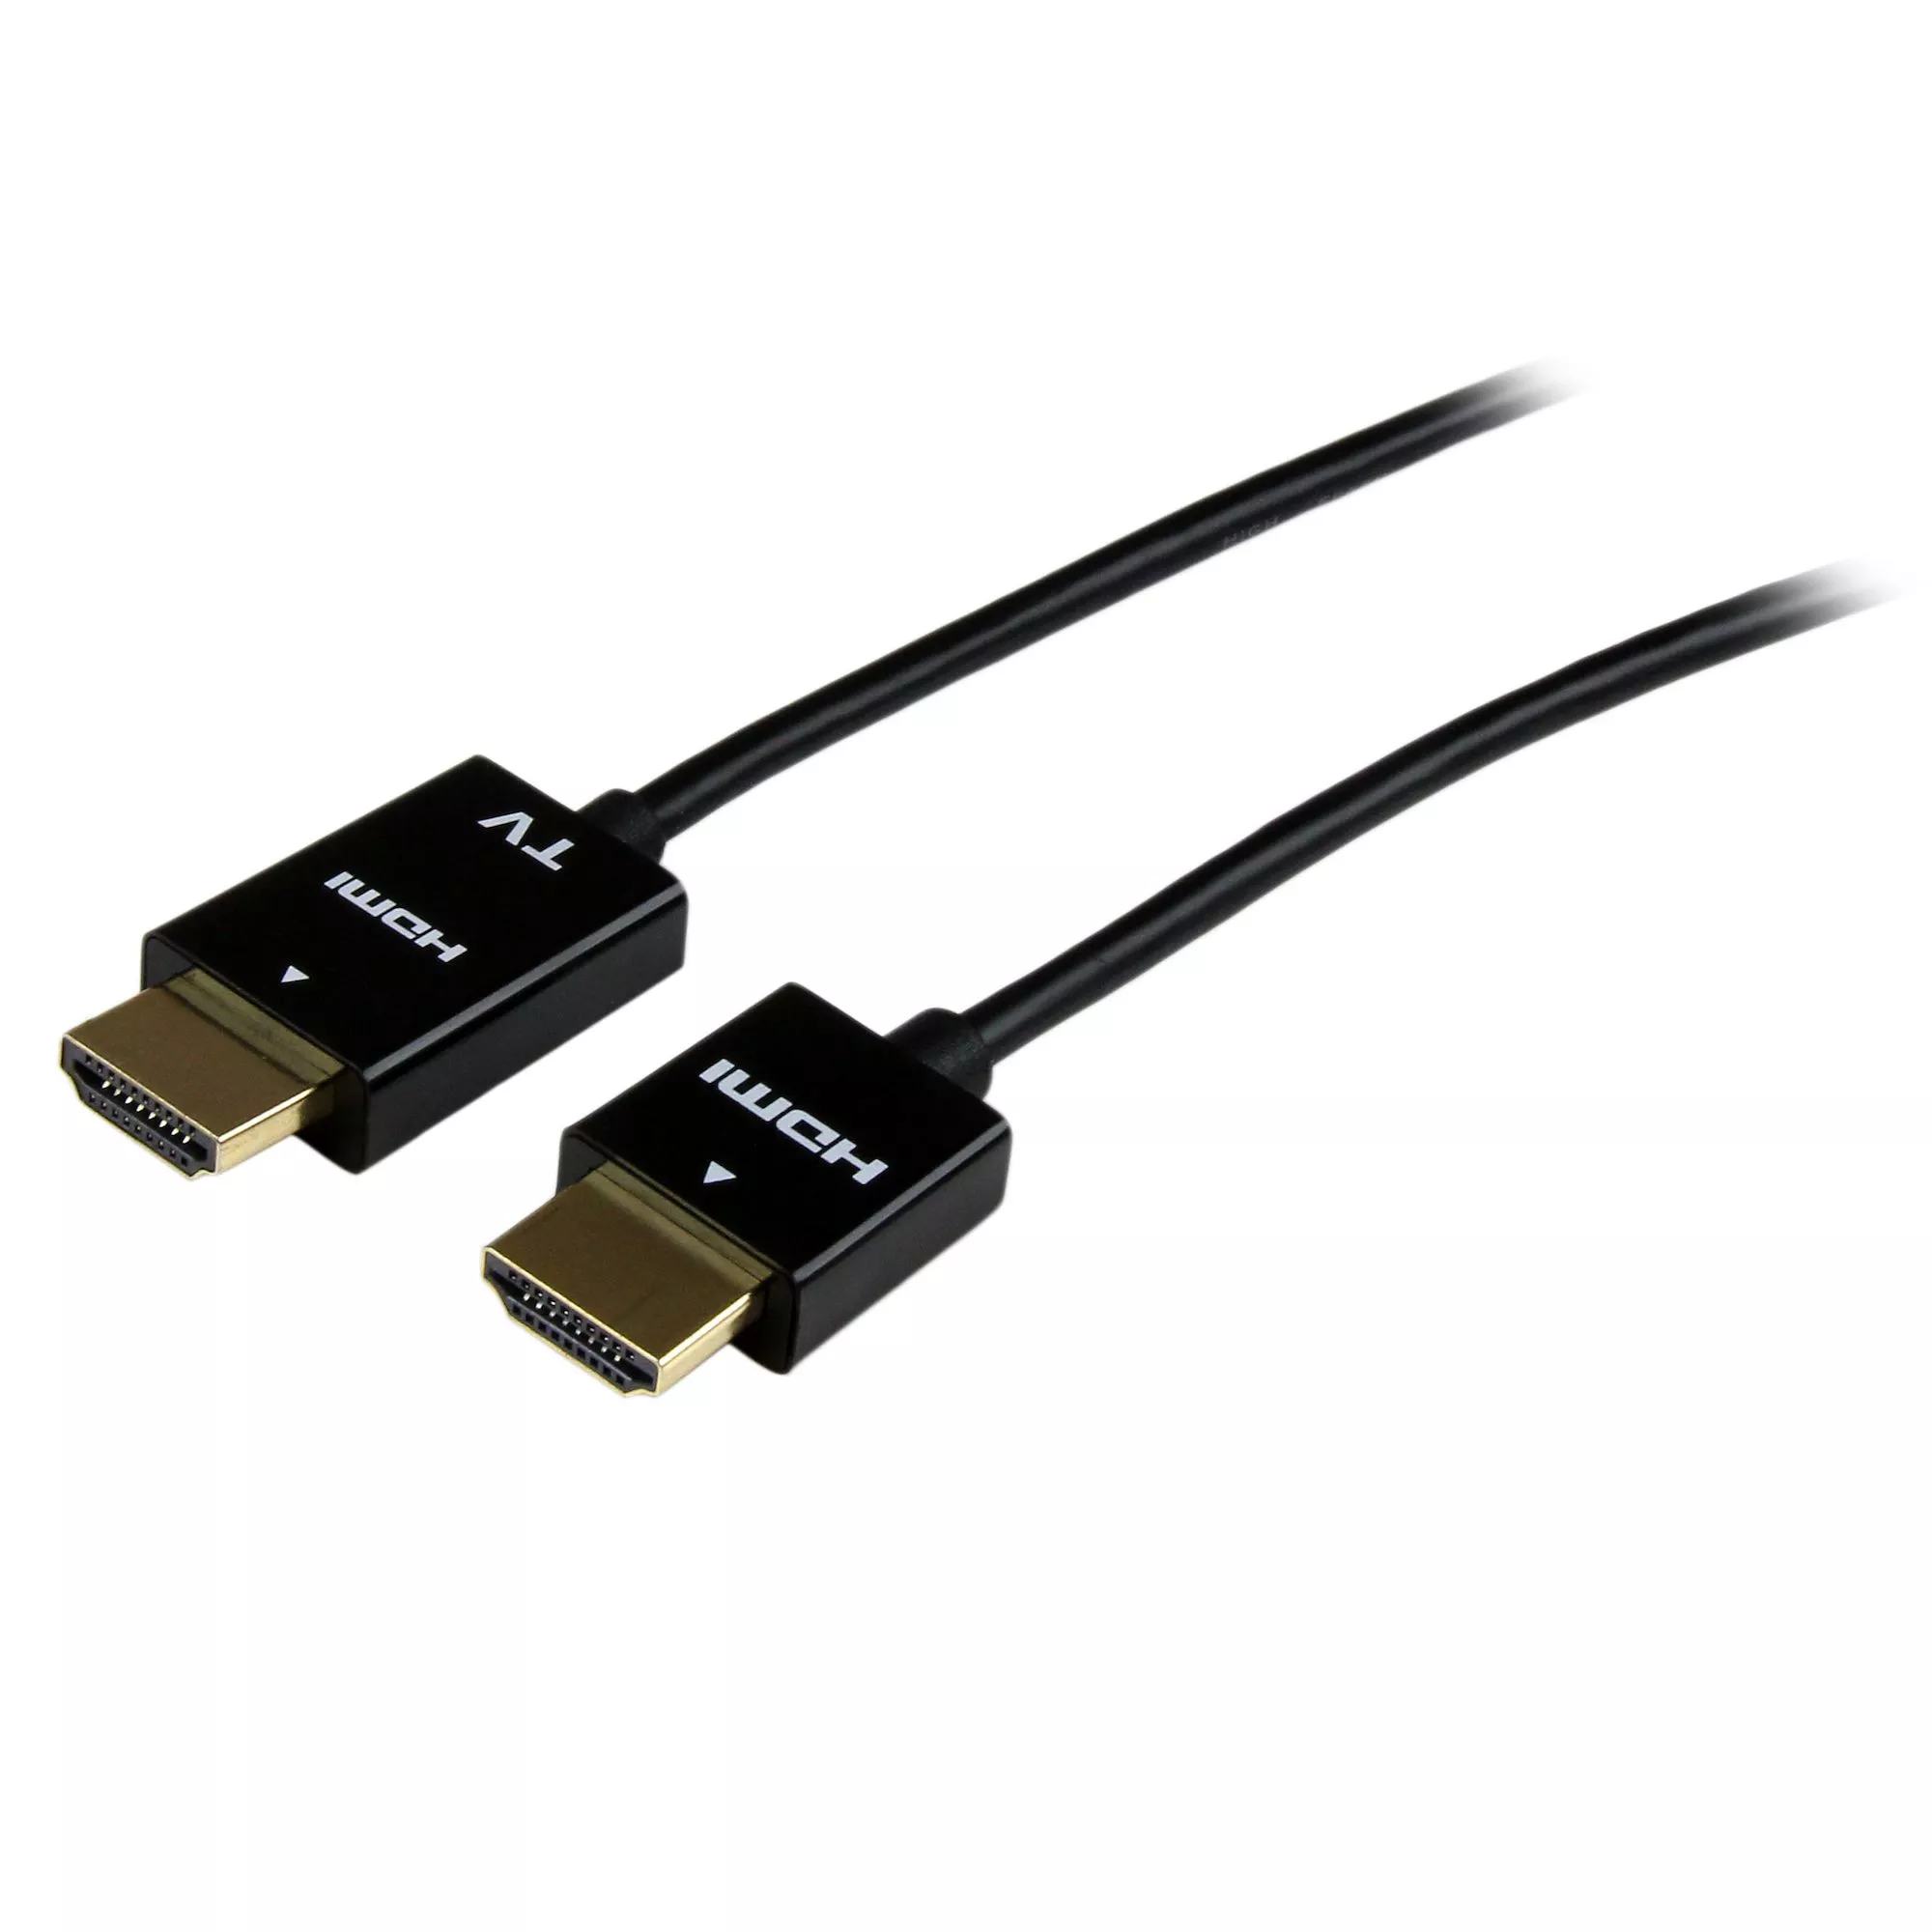 Revendeur officiel StarTech.com Câble HDMI Actif 5m - Câble HDMI Haut Débit